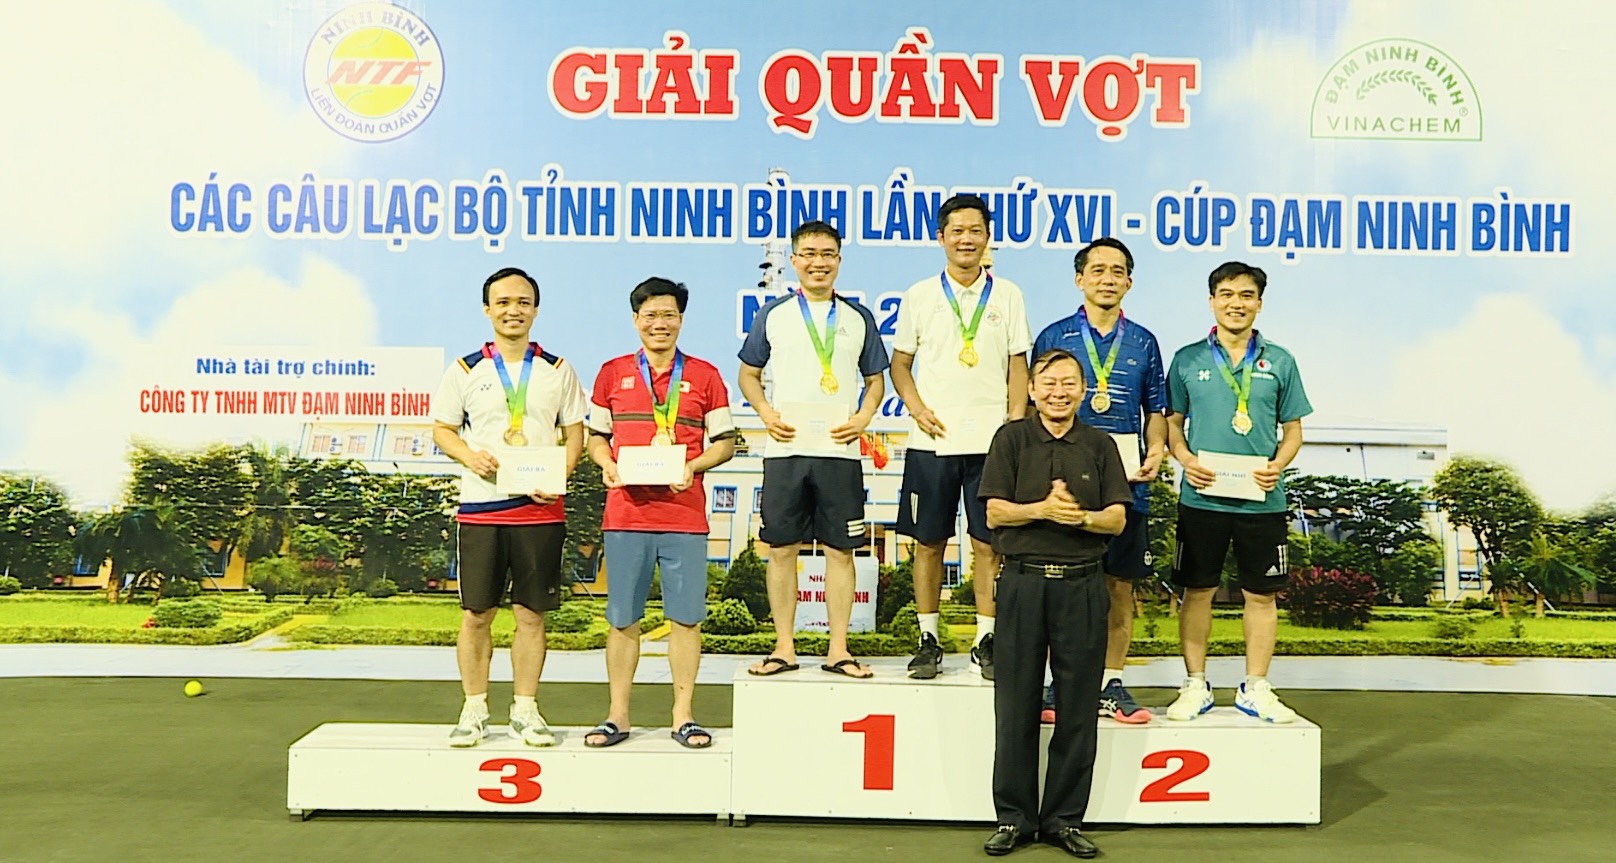 CLB Quần vợt Tam Điệp giành giải nhất toàn đoàn Giải quần vợt các câu lạc bộ tỉnh Ninh Bình lần thứ XVI năm 2022